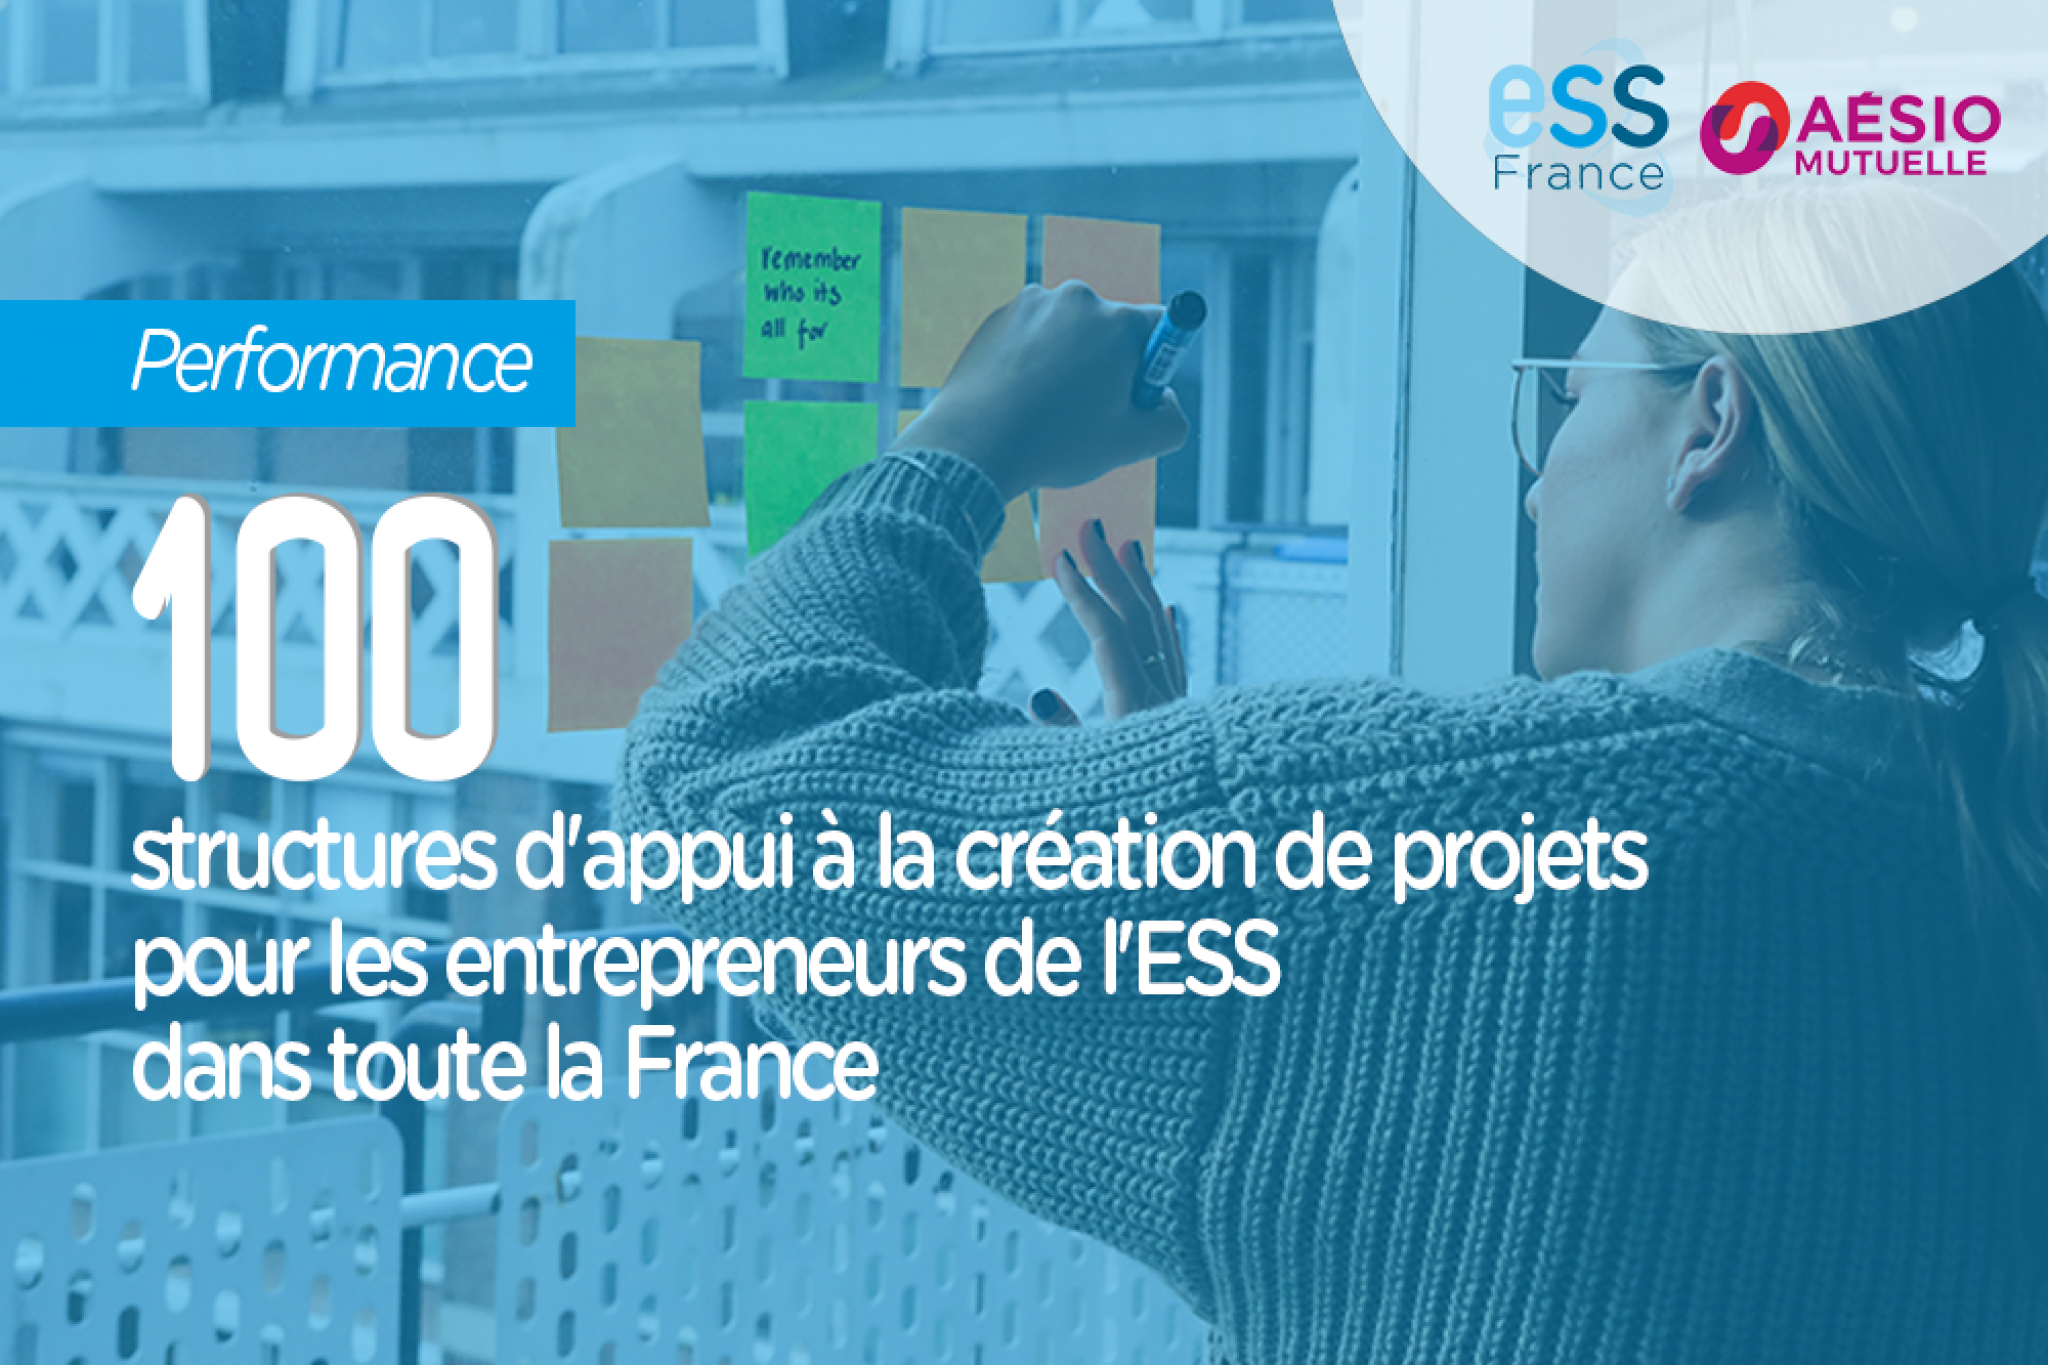 100 structures d'appui à la création de projets pour les entrepreneurs de l'ESS dans toute la France